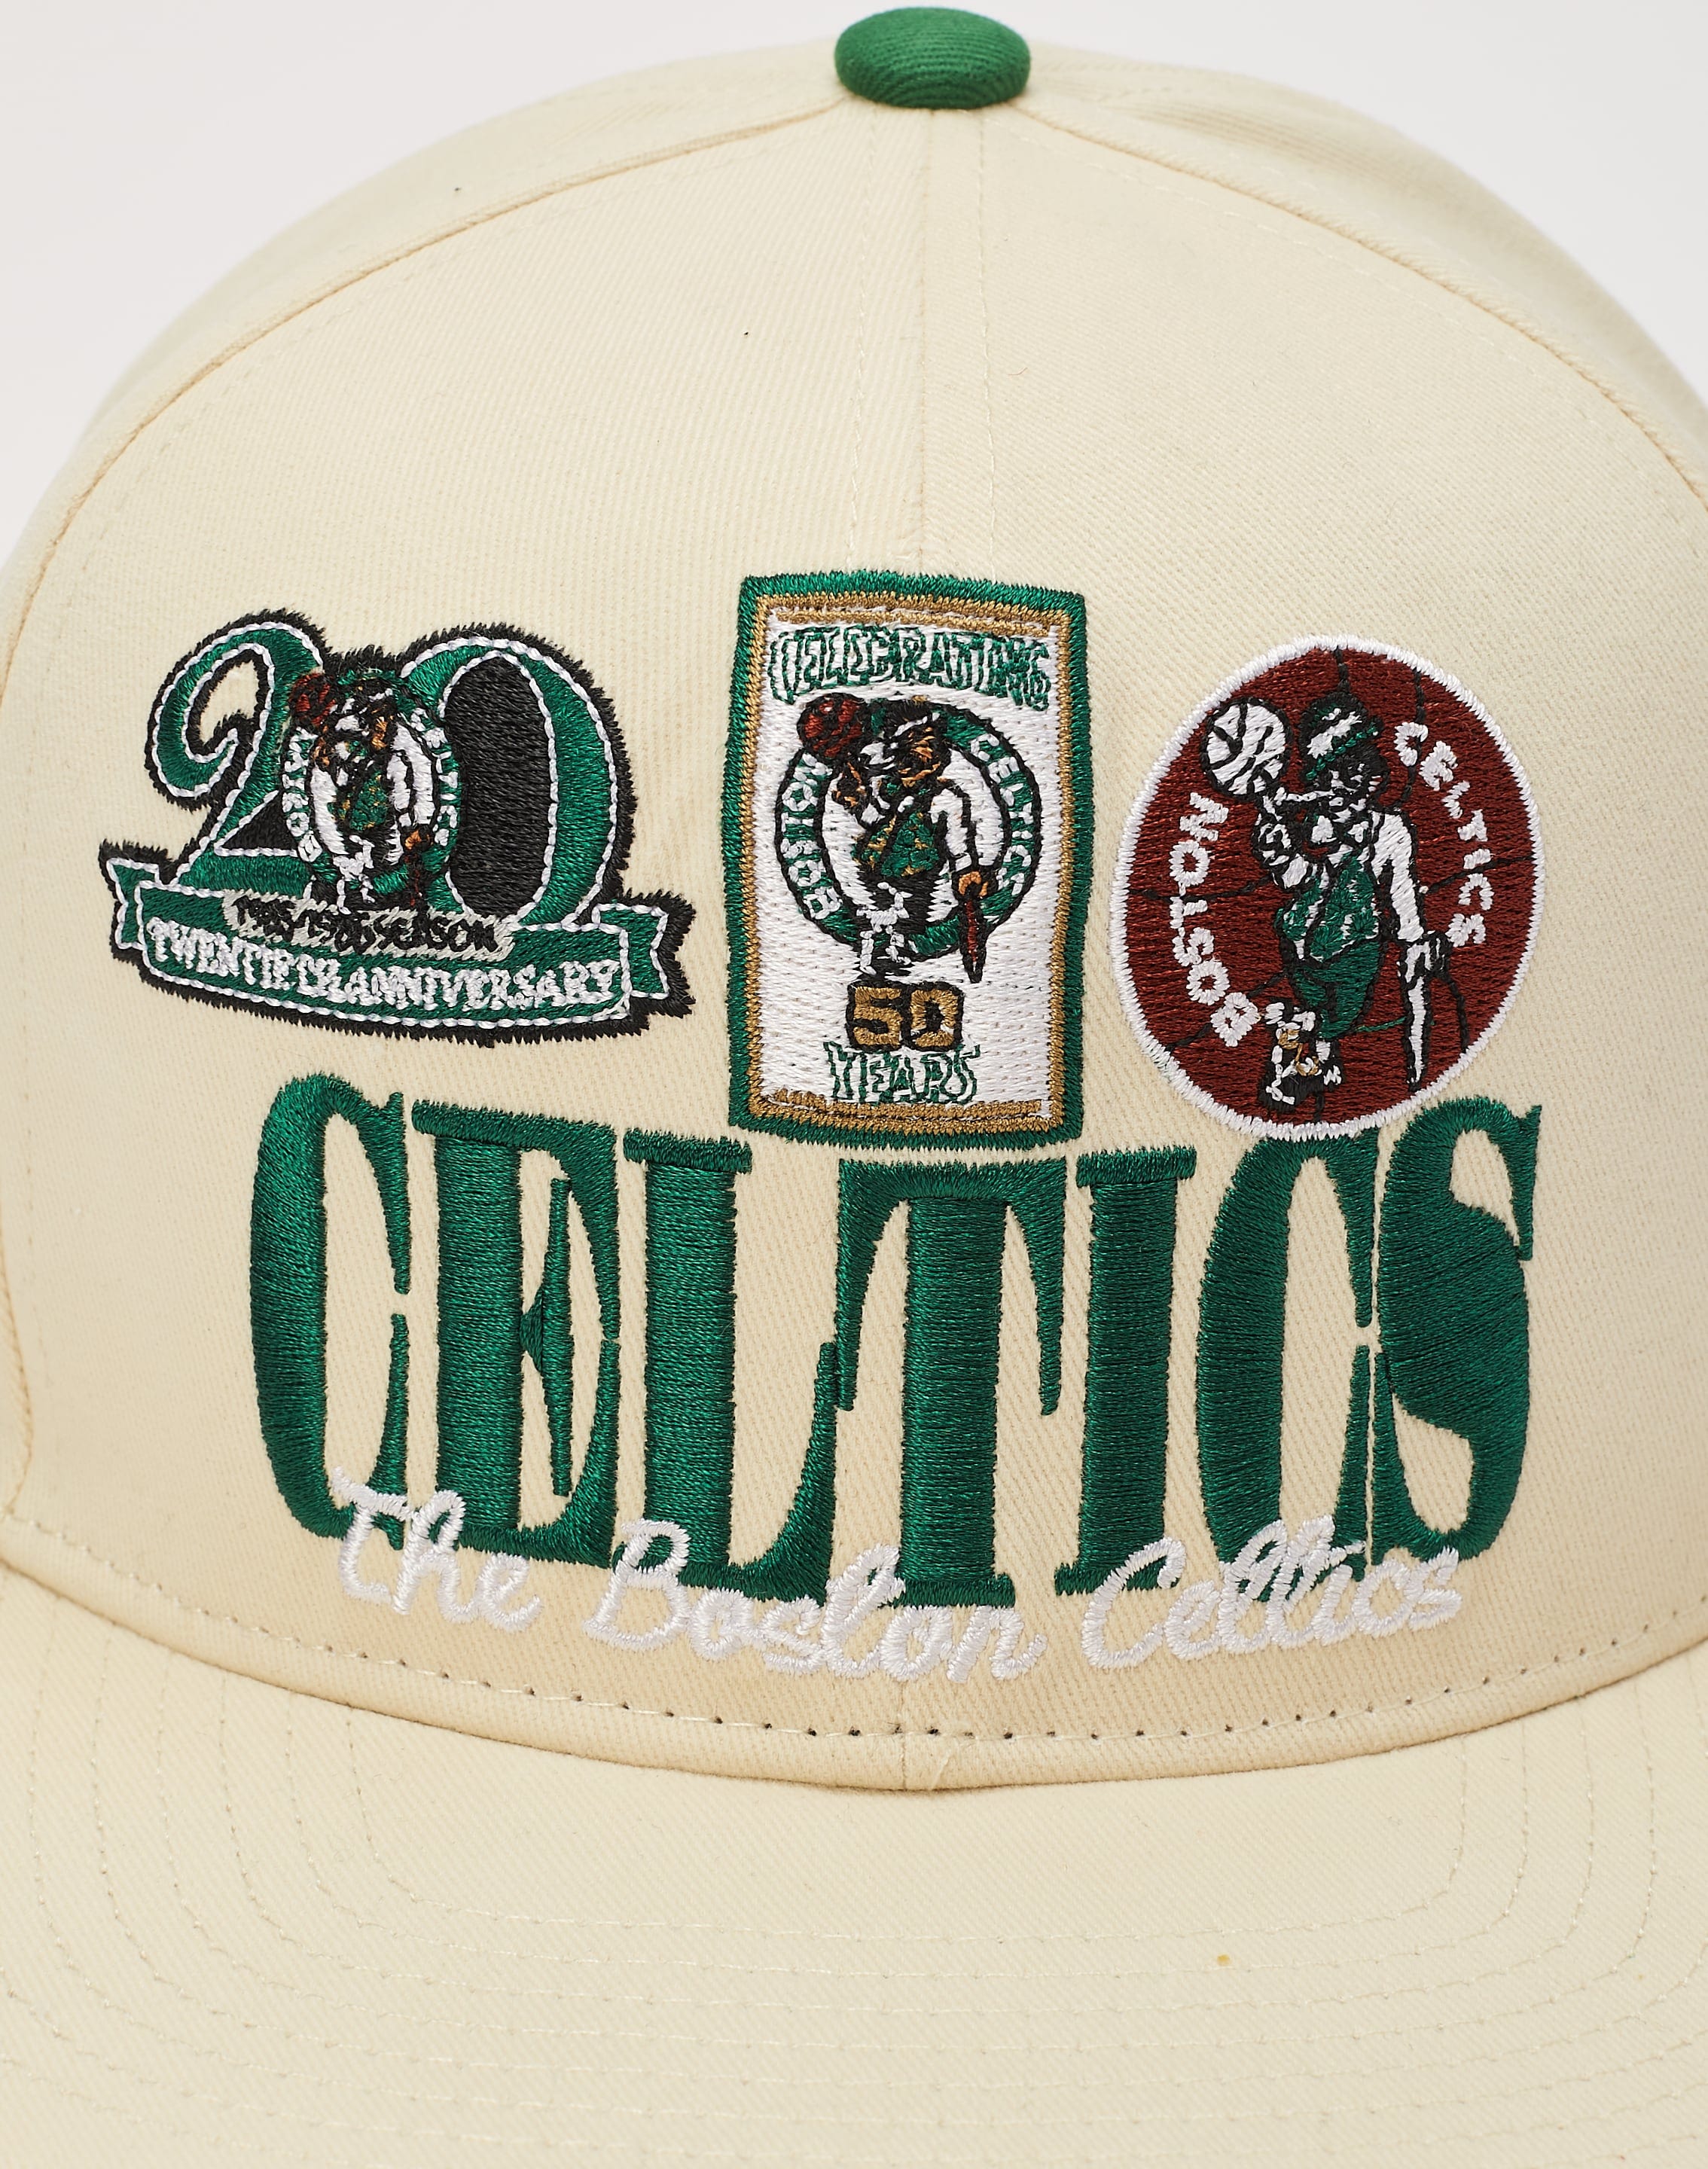 New Era - Gorra Boston Celtics White Green 59Fifty White Crown Snapback -  Ryses